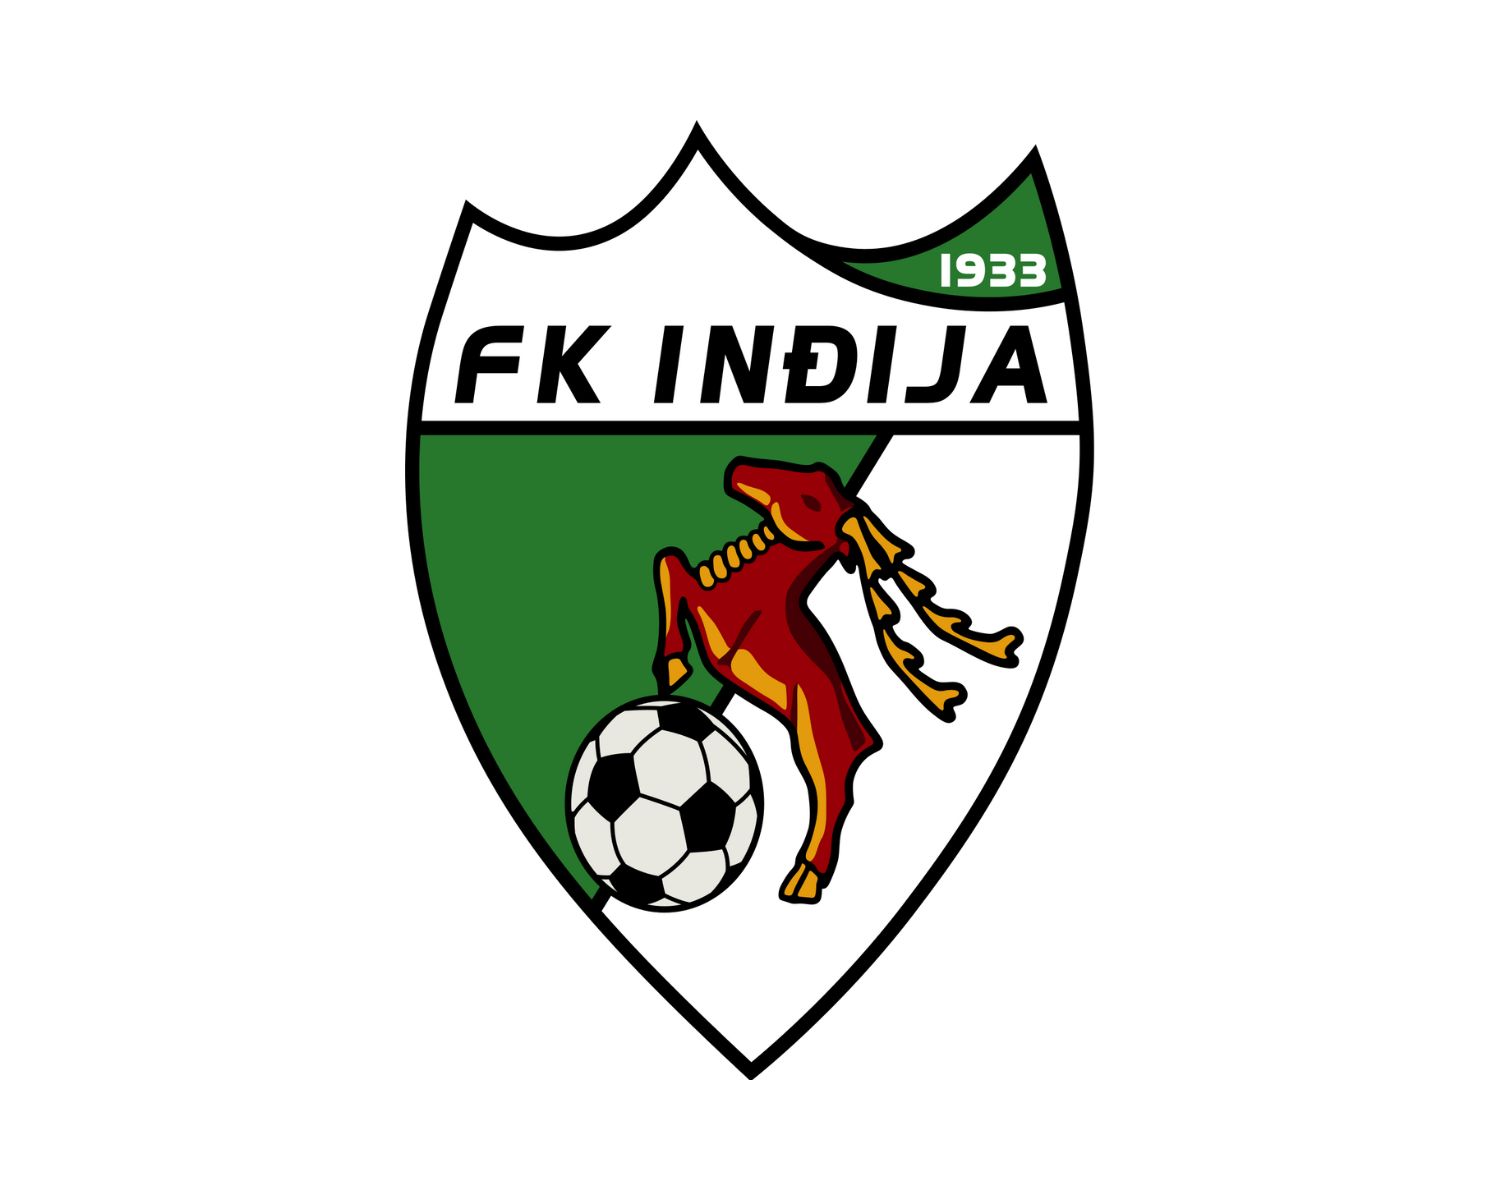 fk-indija-25-football-club-facts